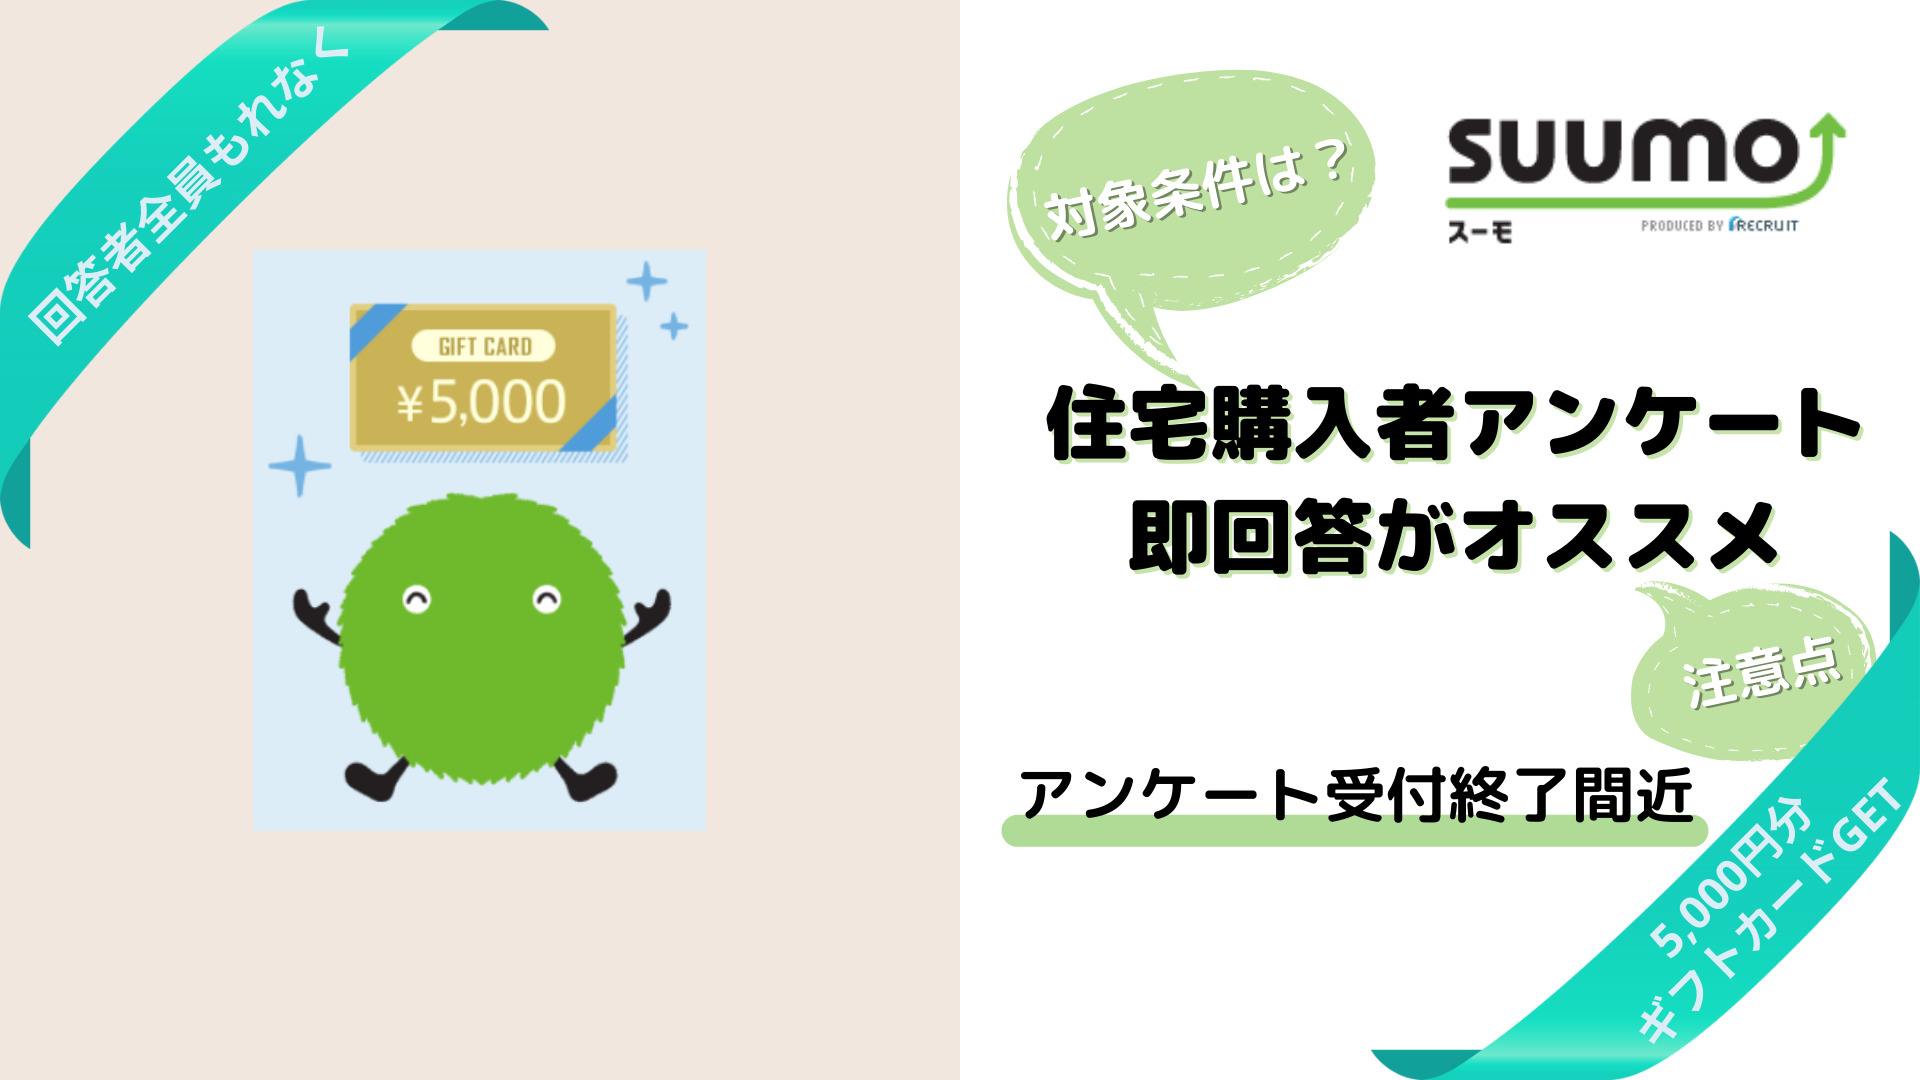 【SUUMO】受付終了間近！アンケート回答でもれなく5,000円分ギフトカードGET